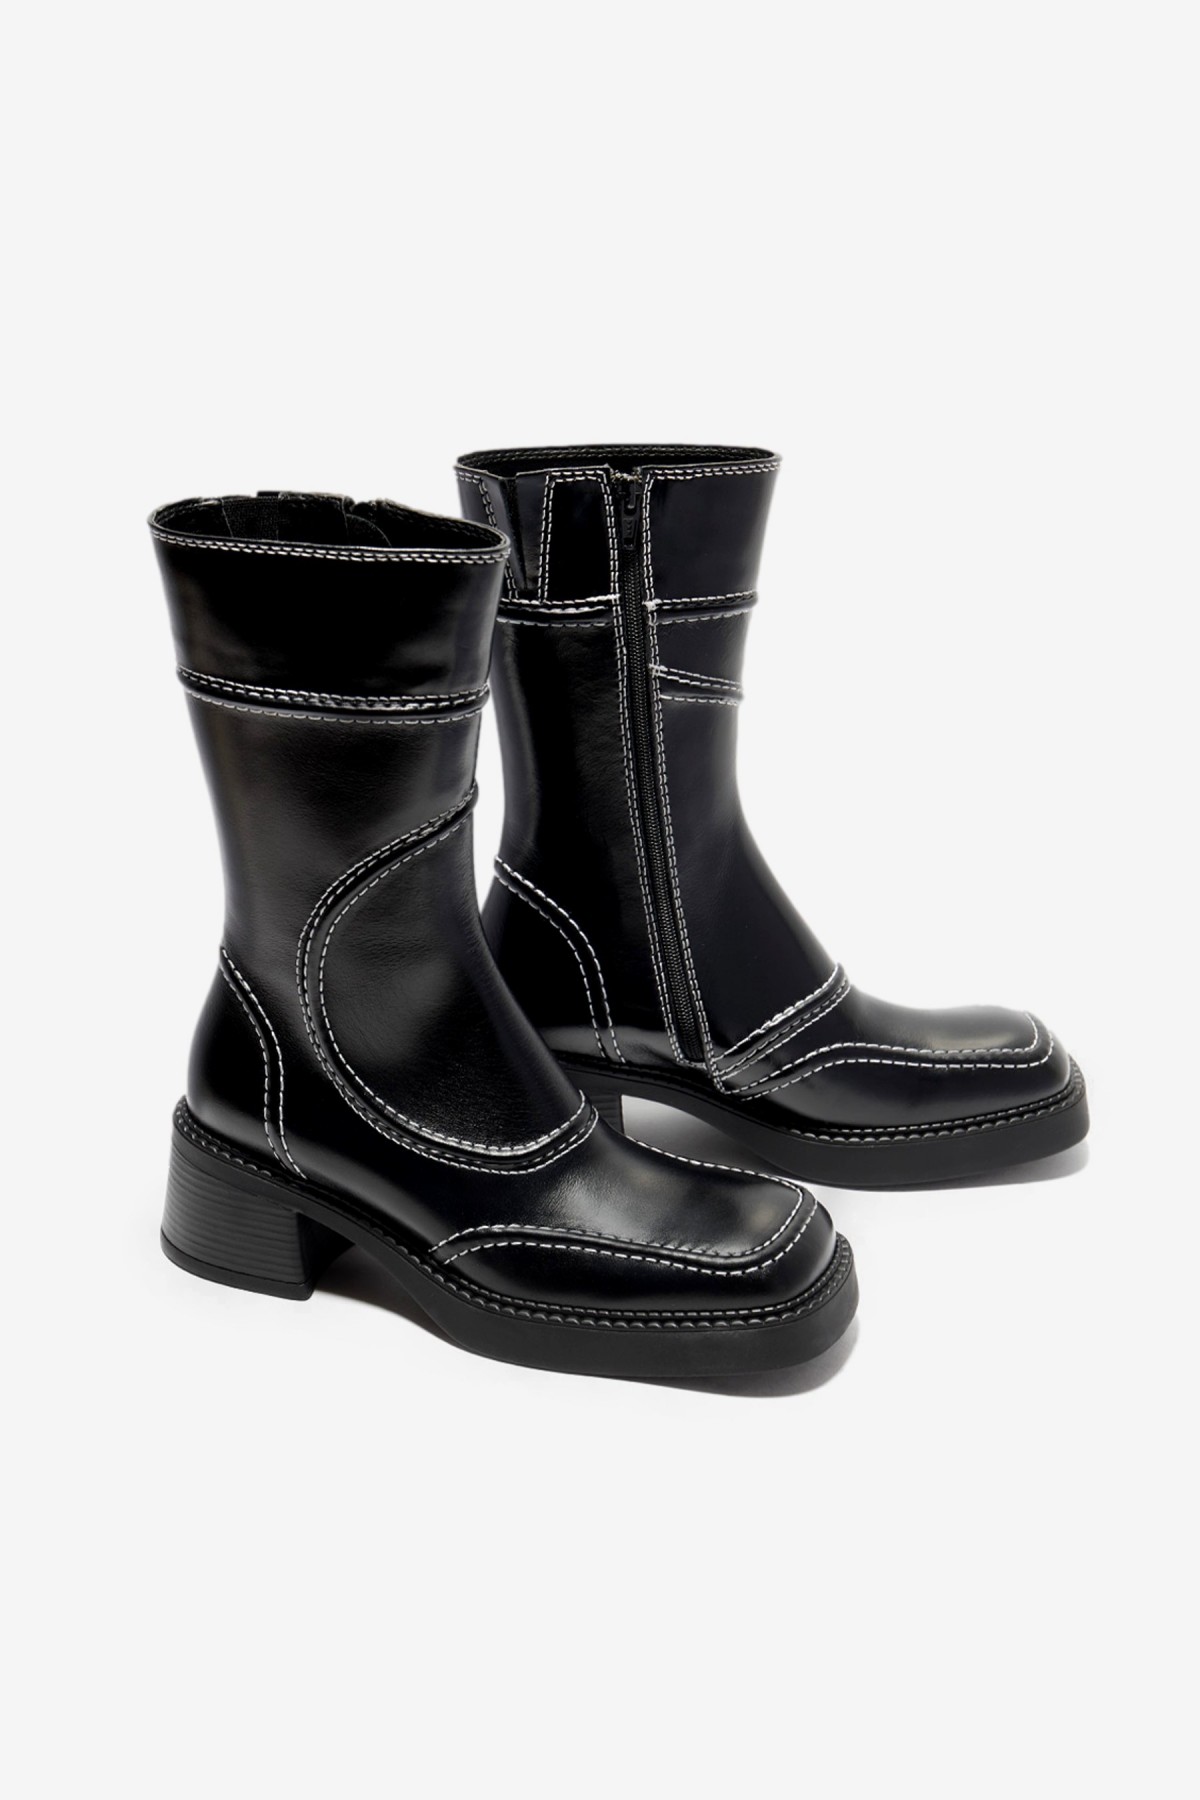 Miista Malene Ankle Boots in Black